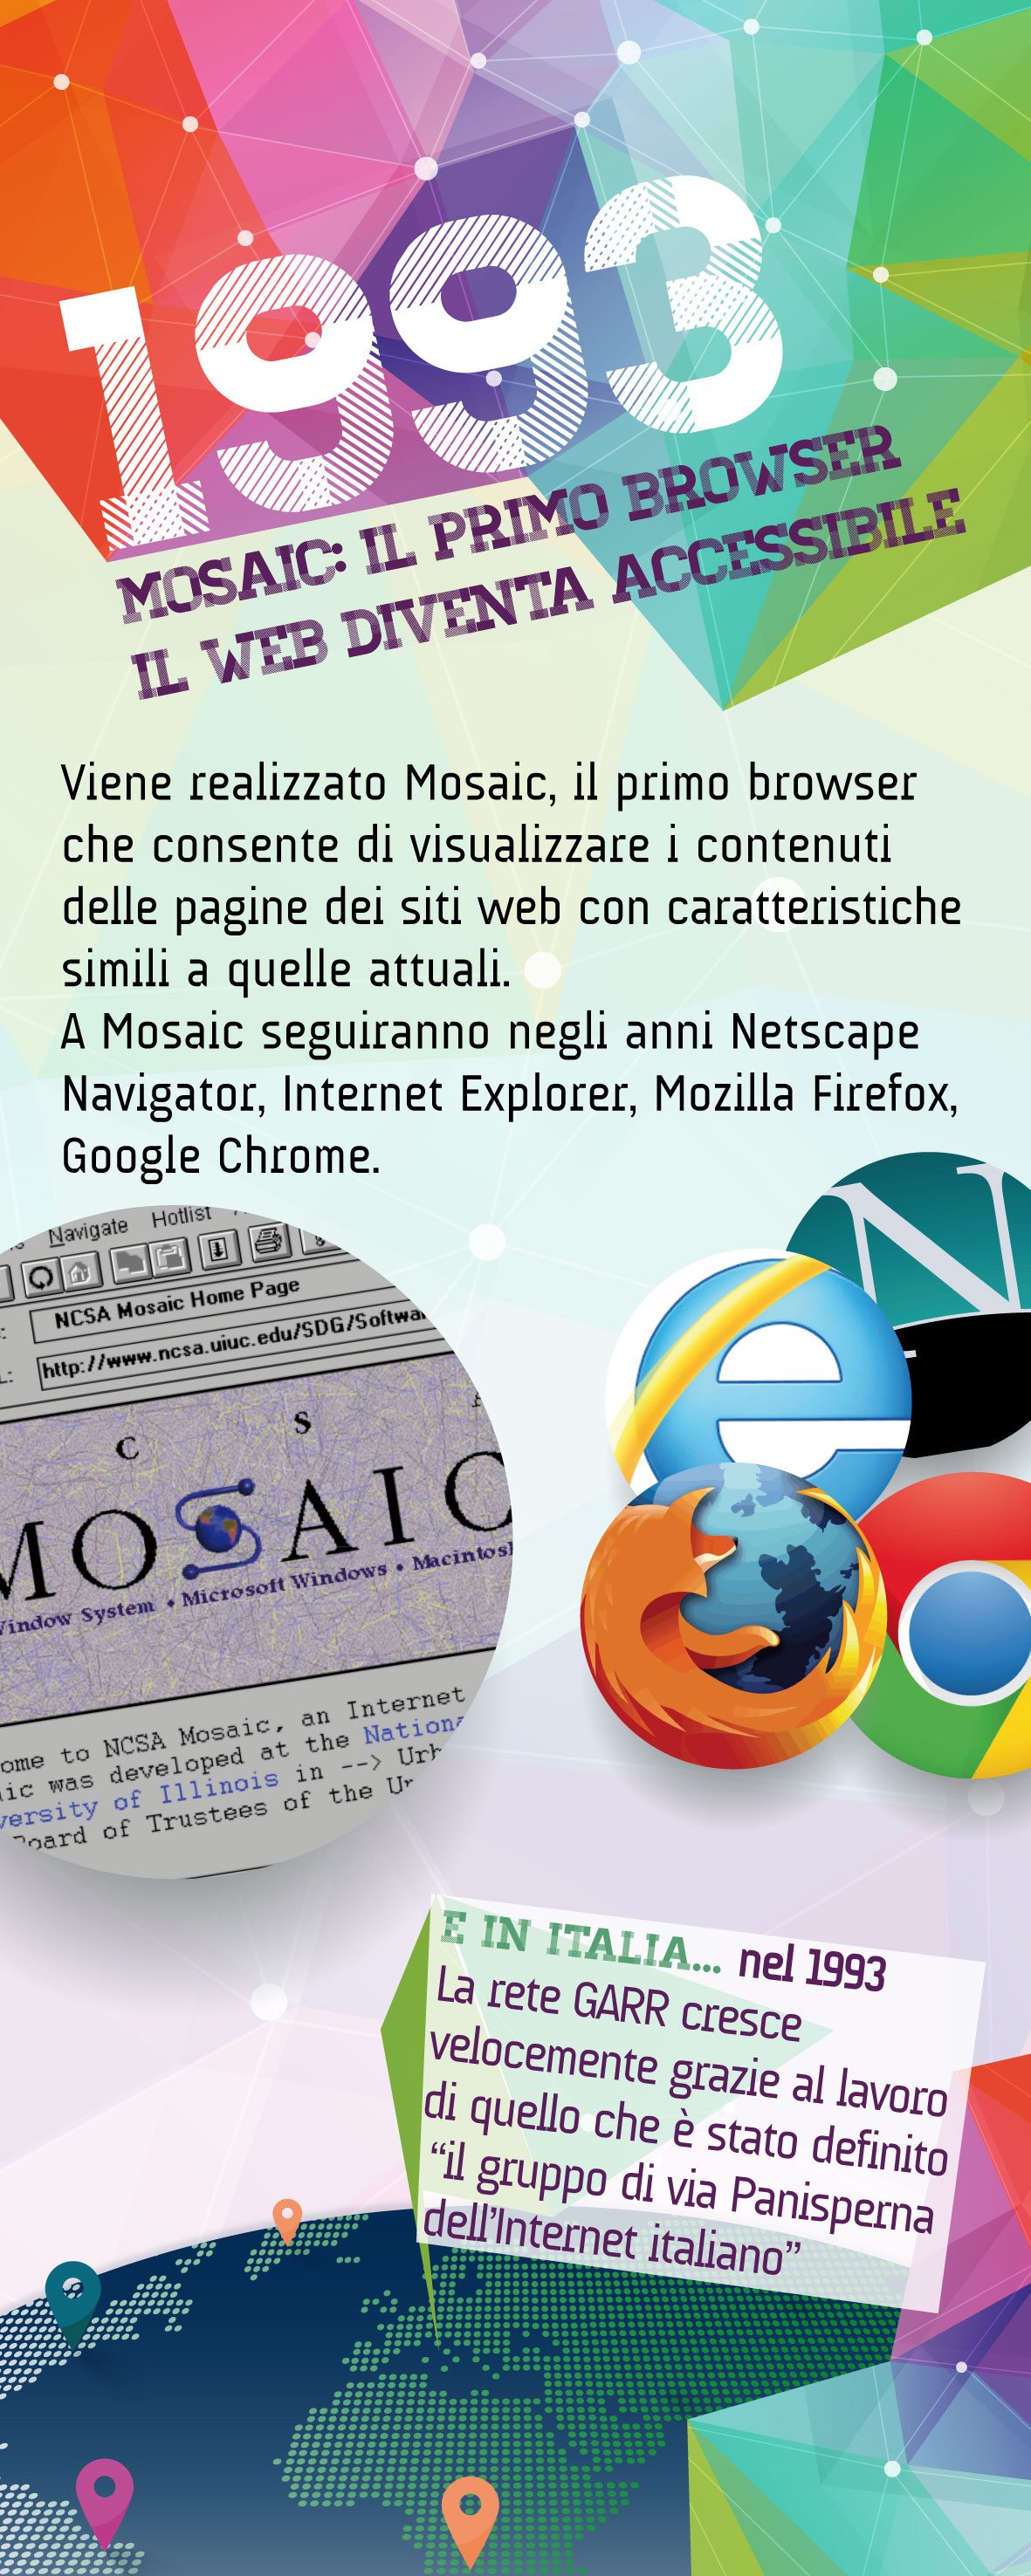 1993 - Mosaic il primo browser, il web diventa accessibile